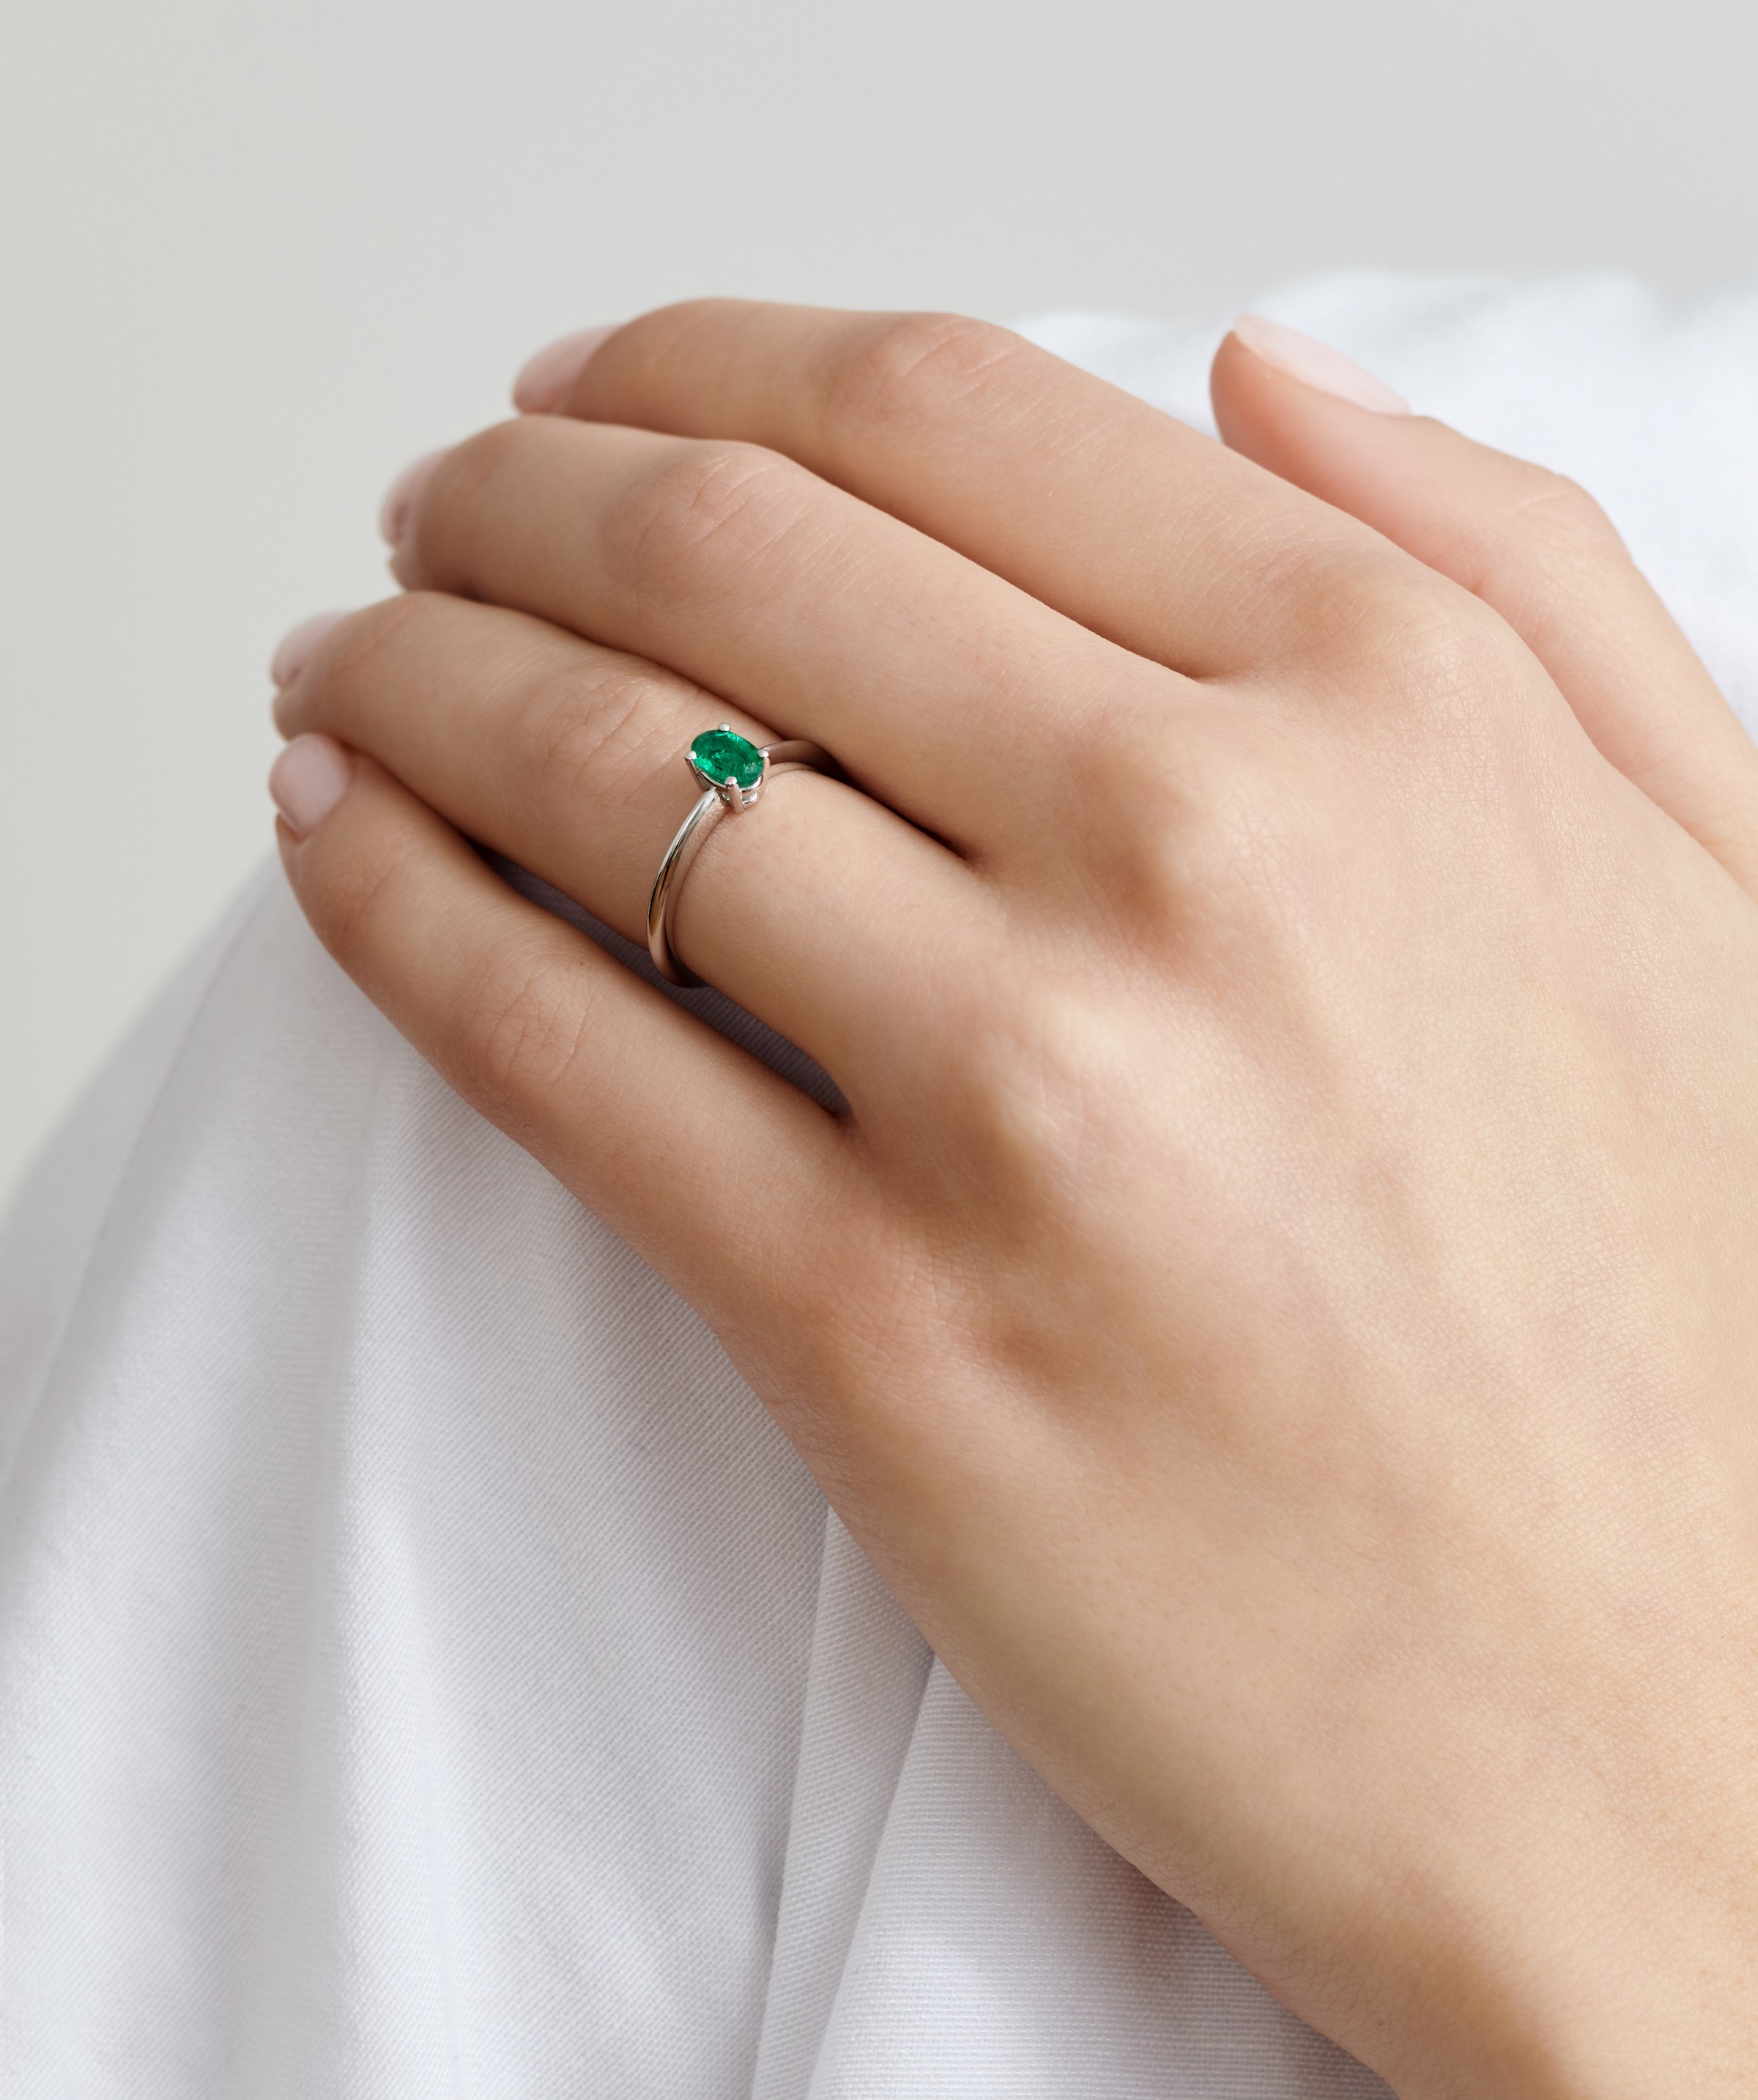 Gorgeous Green zlatni zaručnički prsten sa smaragdom